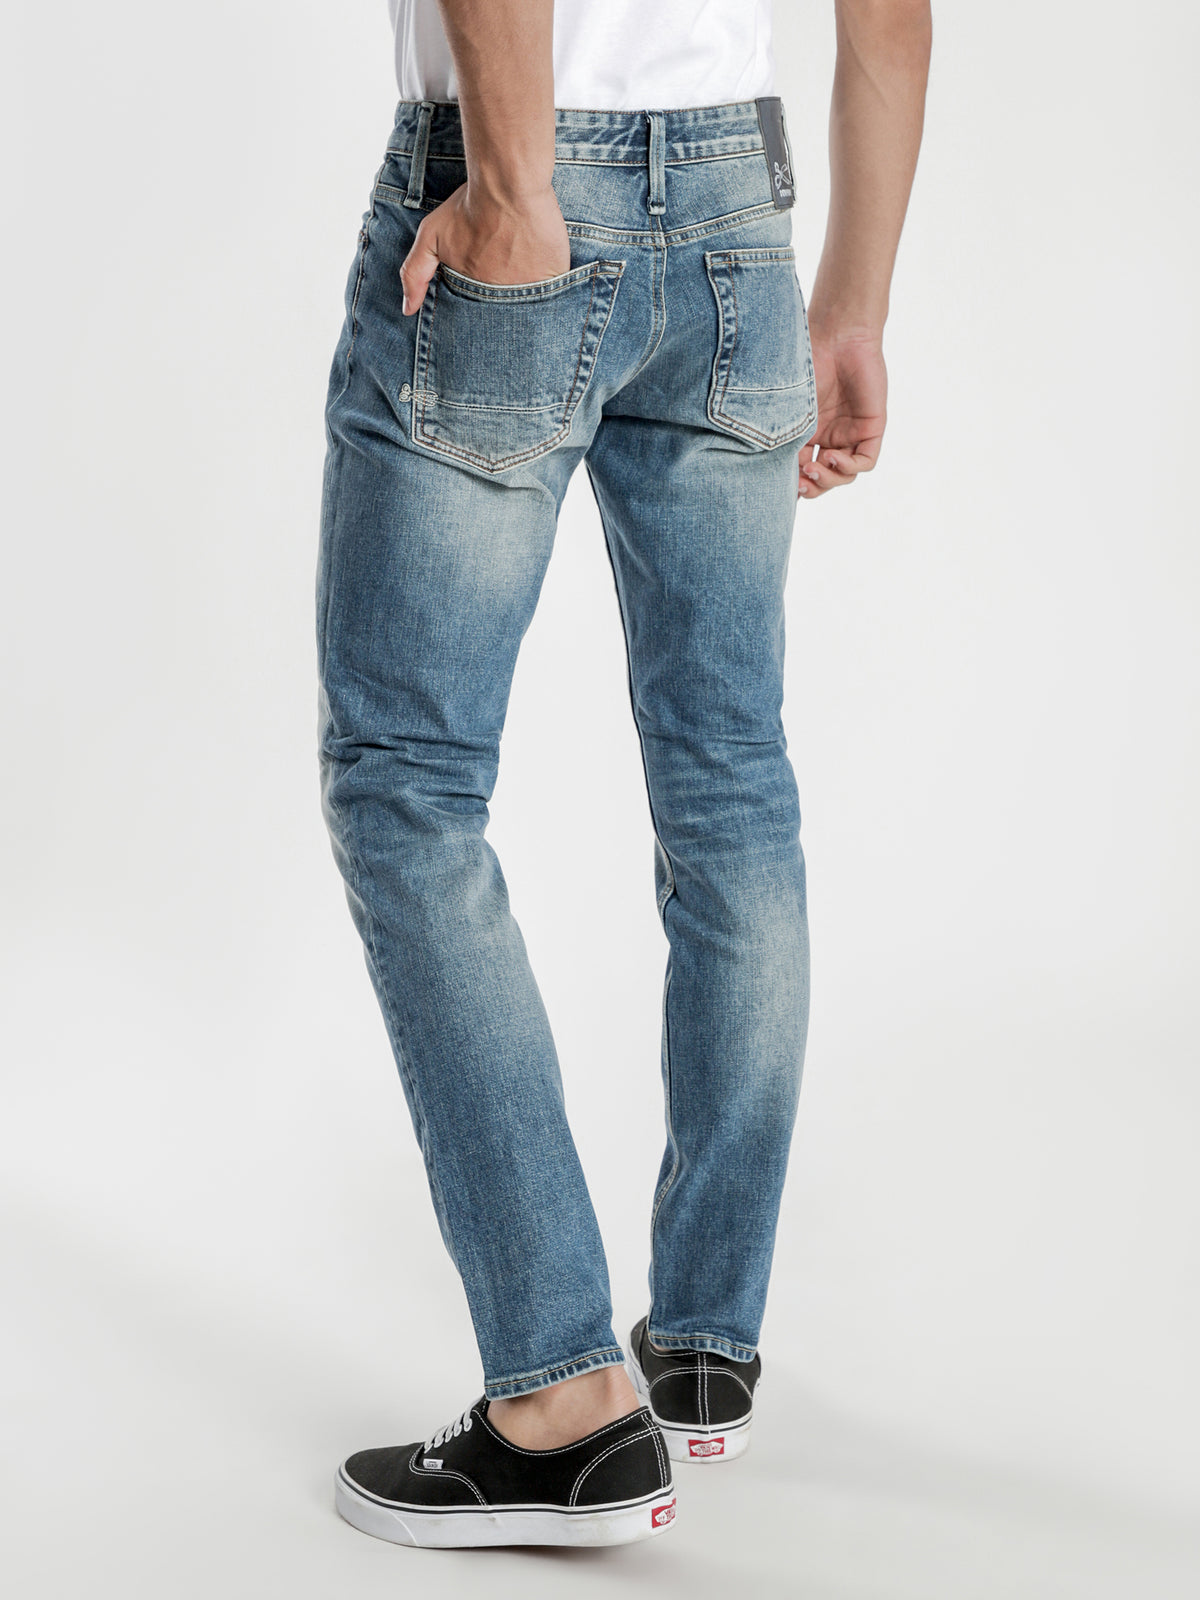 Razor Acsubl Slim Jeans in Blue Wash Denim